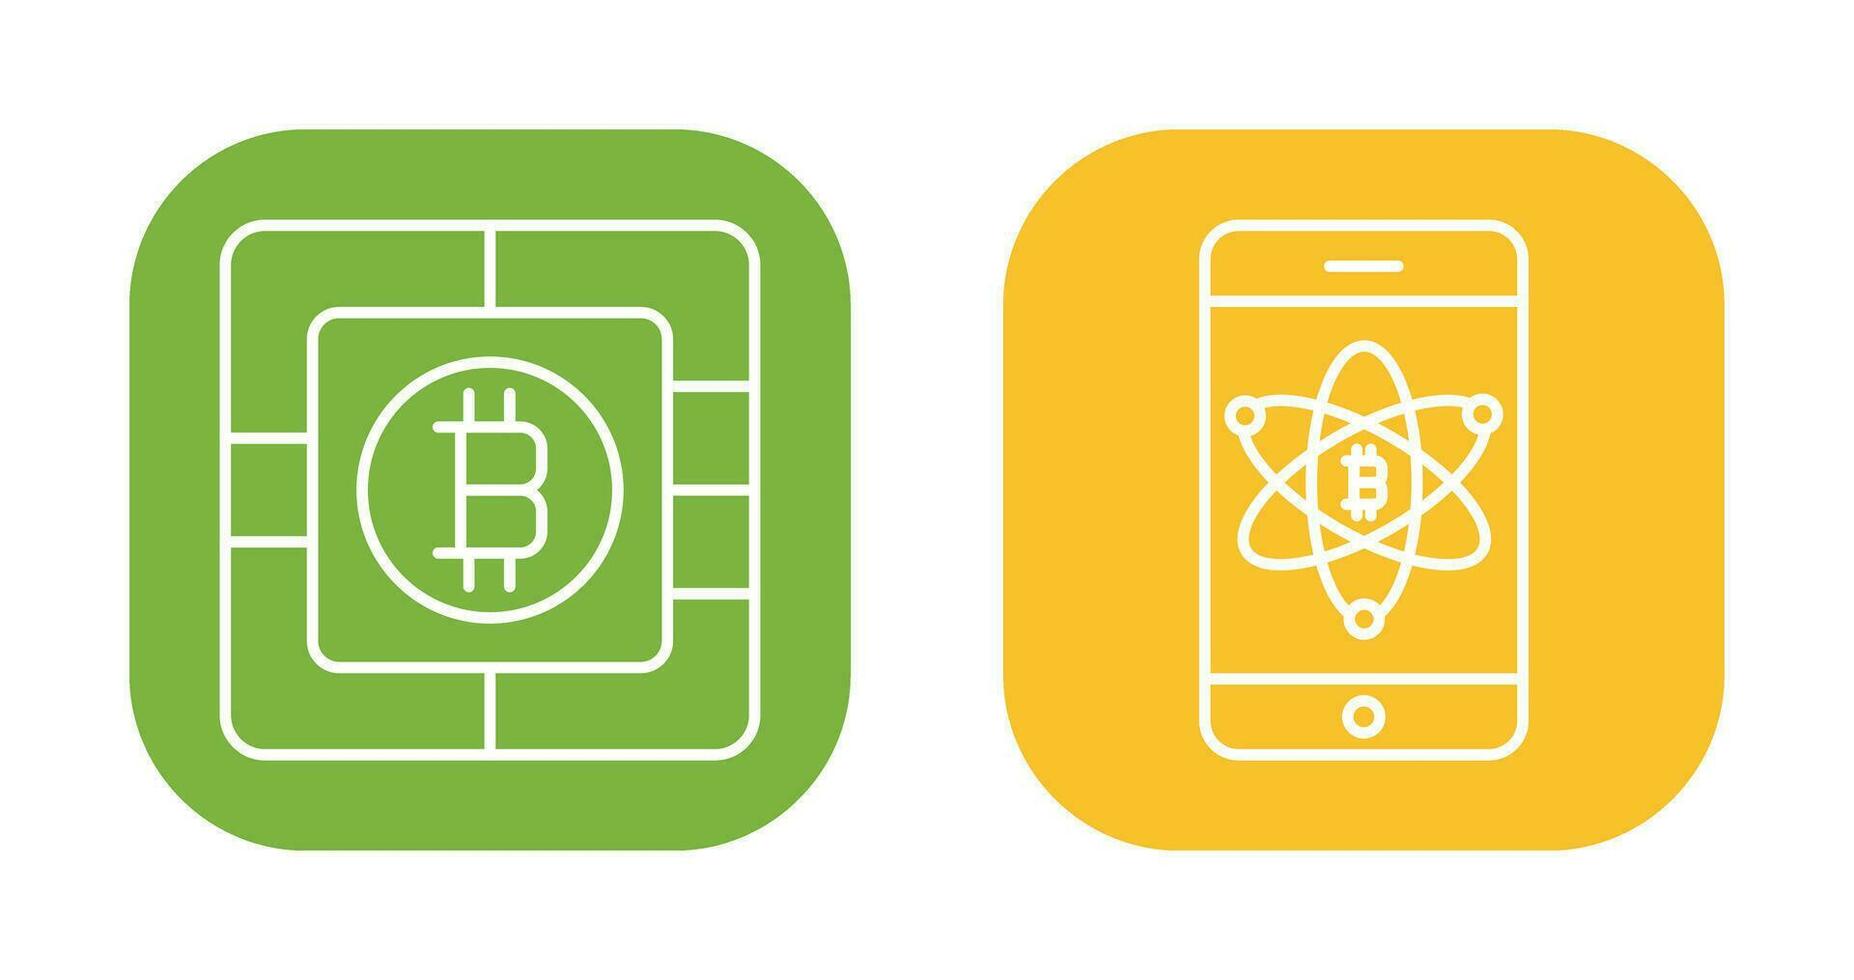 bitcoin puce et mobile icône vecteur